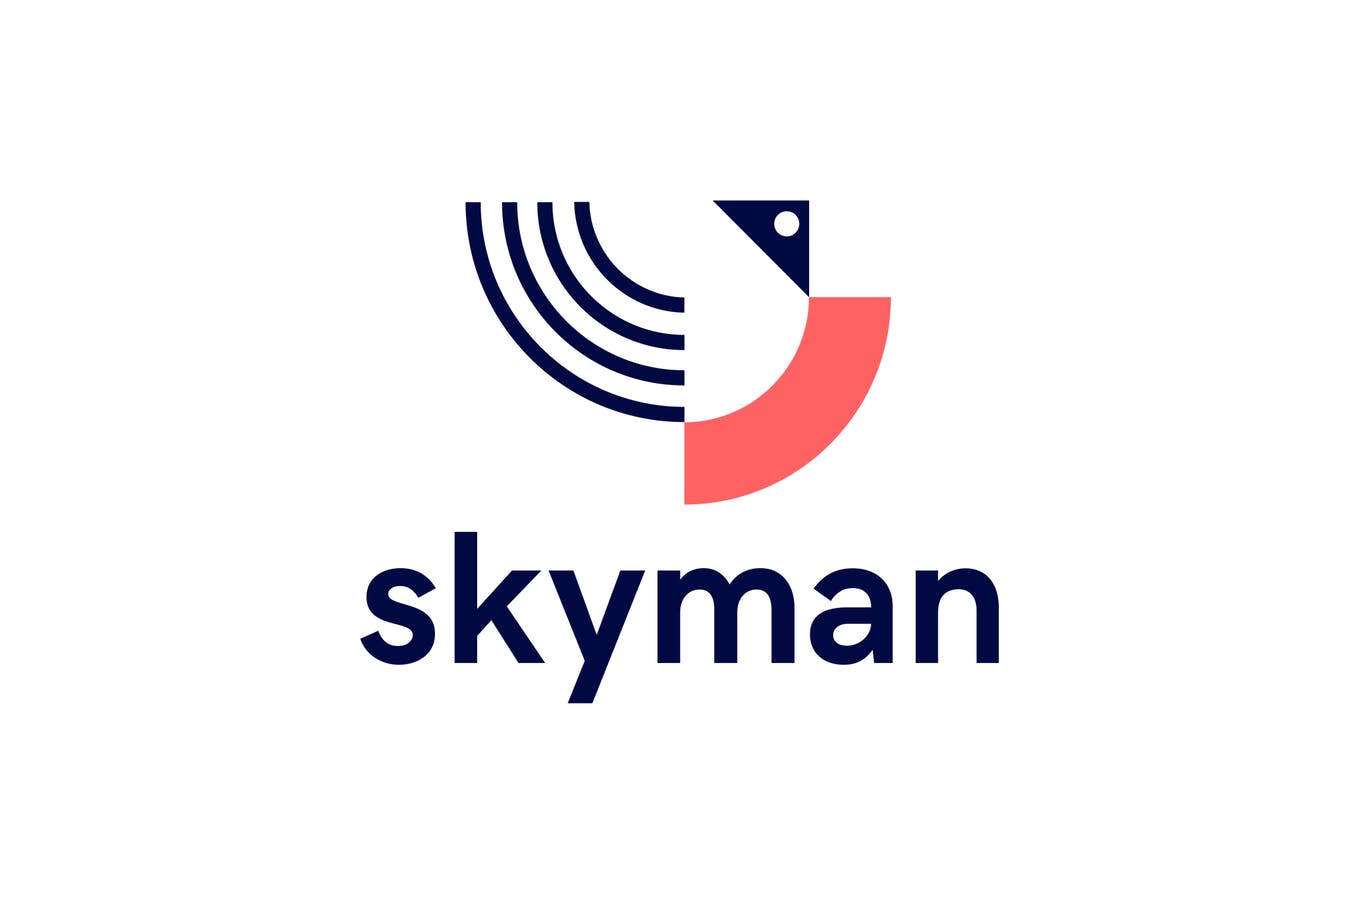 Skyman抽象几何图形Logo设计素材库精选模板 Skyman Logo插图